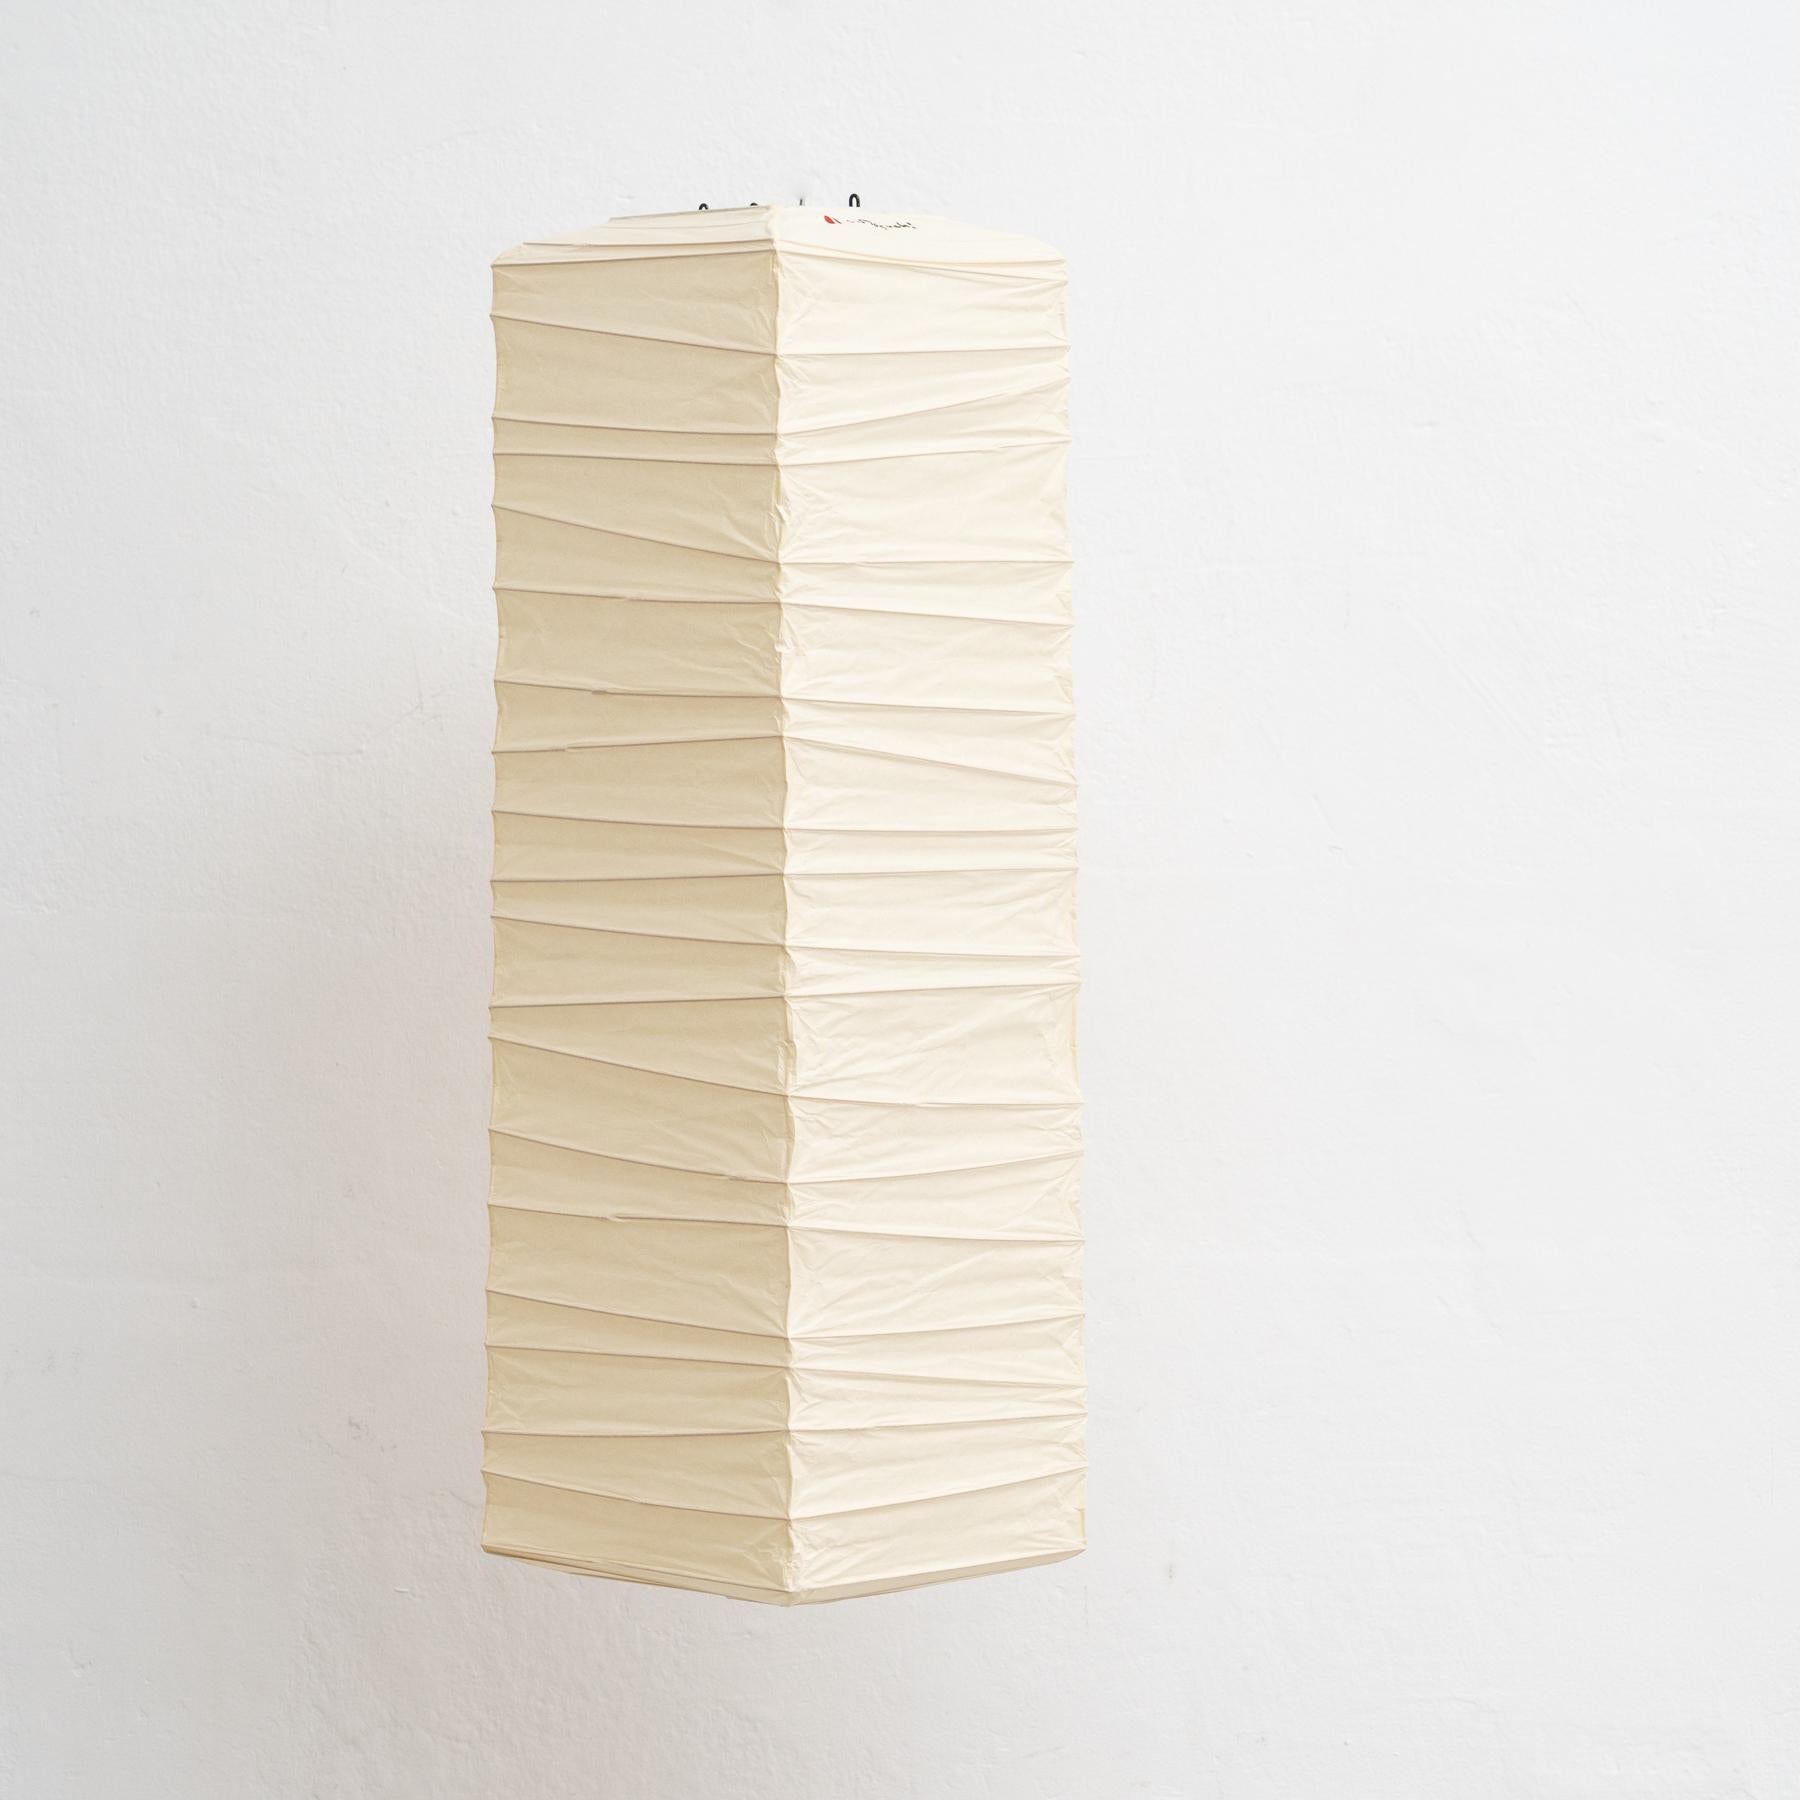 Deckenleuchte, Modell 70XL, entworfen von Isamu Noguchi.
Hergestellt von Ozeki & Company Ltd. (Japan.)

Mit Washi-Papier überzogene Bambus-Rippenstruktur, die nach traditionellen Verfahren hergestellt wird.

In gutem Vintage-Zustand.

Signierte